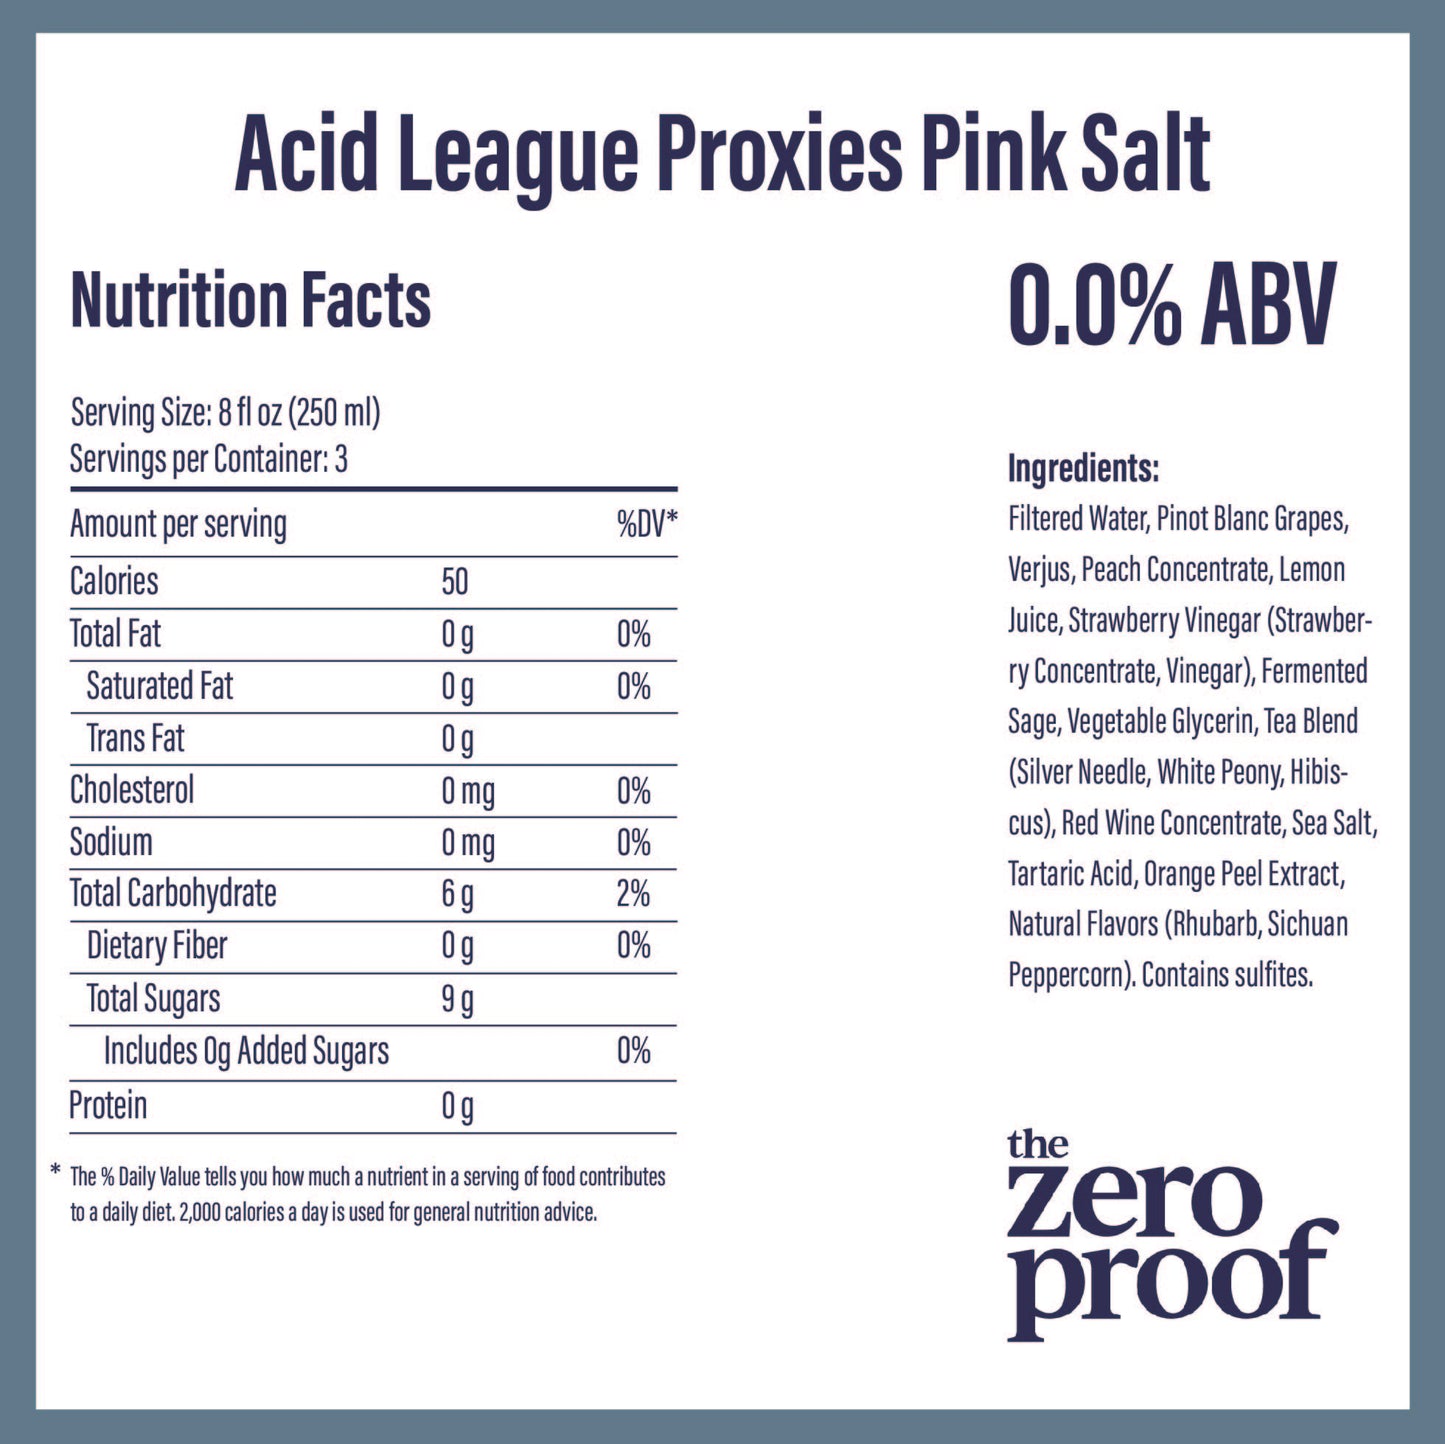 Proxies Pink Salt